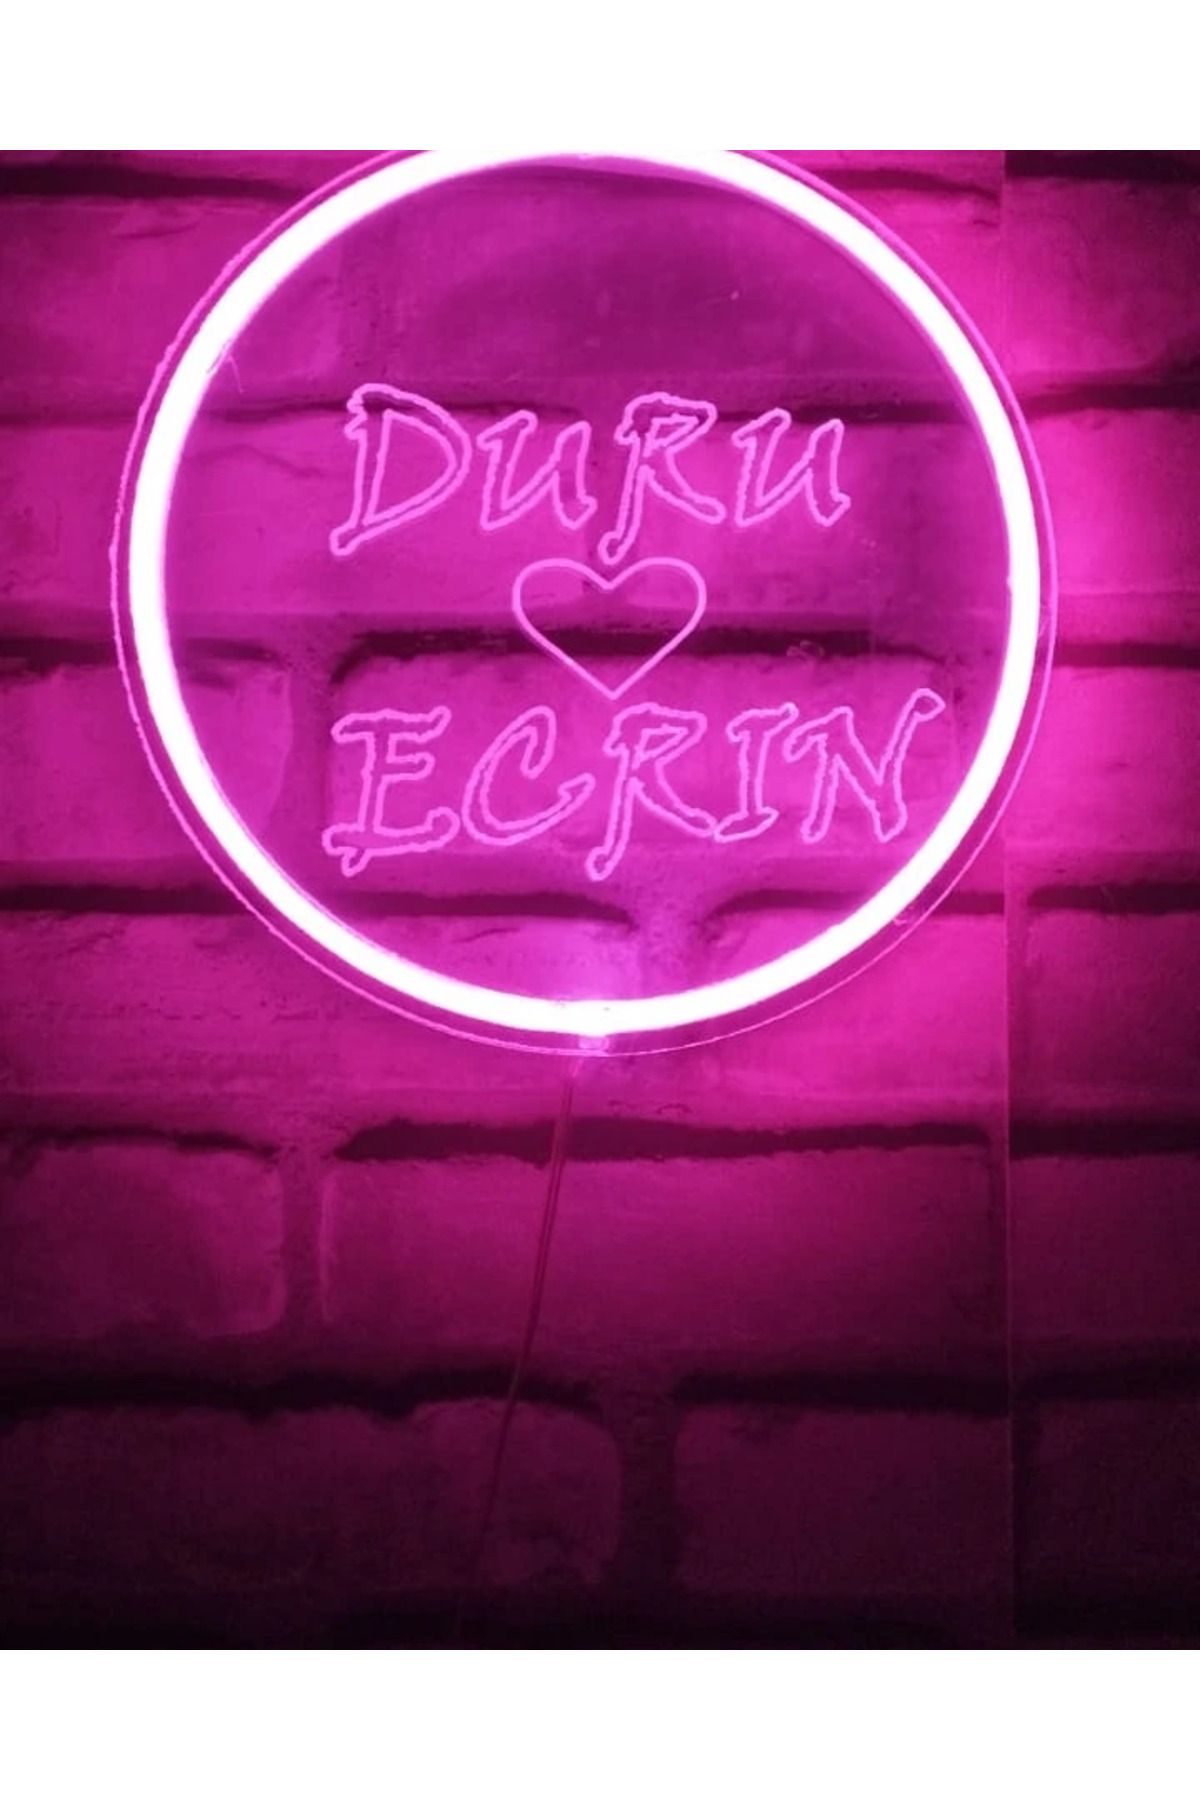 Erdem neon led Kişiye Özel Isimlik Masa Üstü Duvar Yazısı Neon Led Trafolu Gece Lambası Dekoratif Tasarım